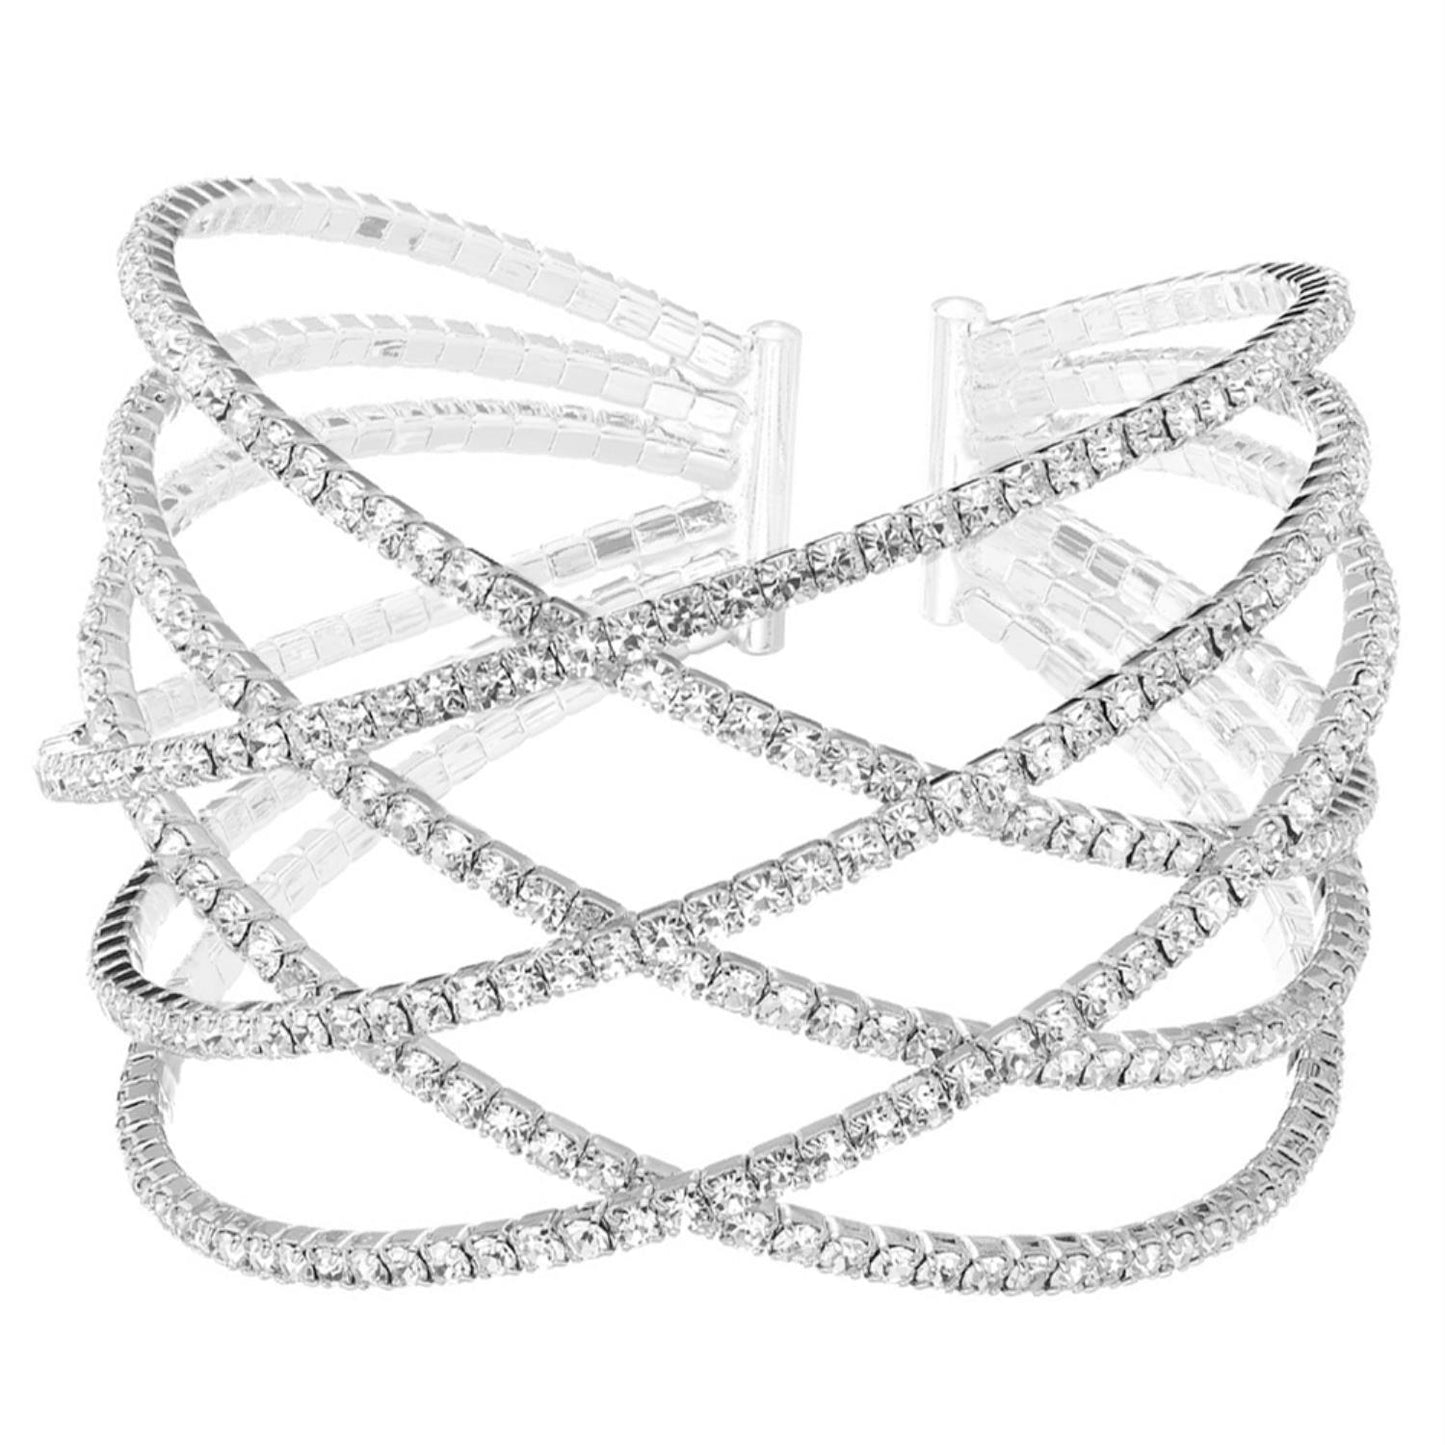 Rhinestone Six Row Layer Wire Bracelet - Tigbul's Fashion